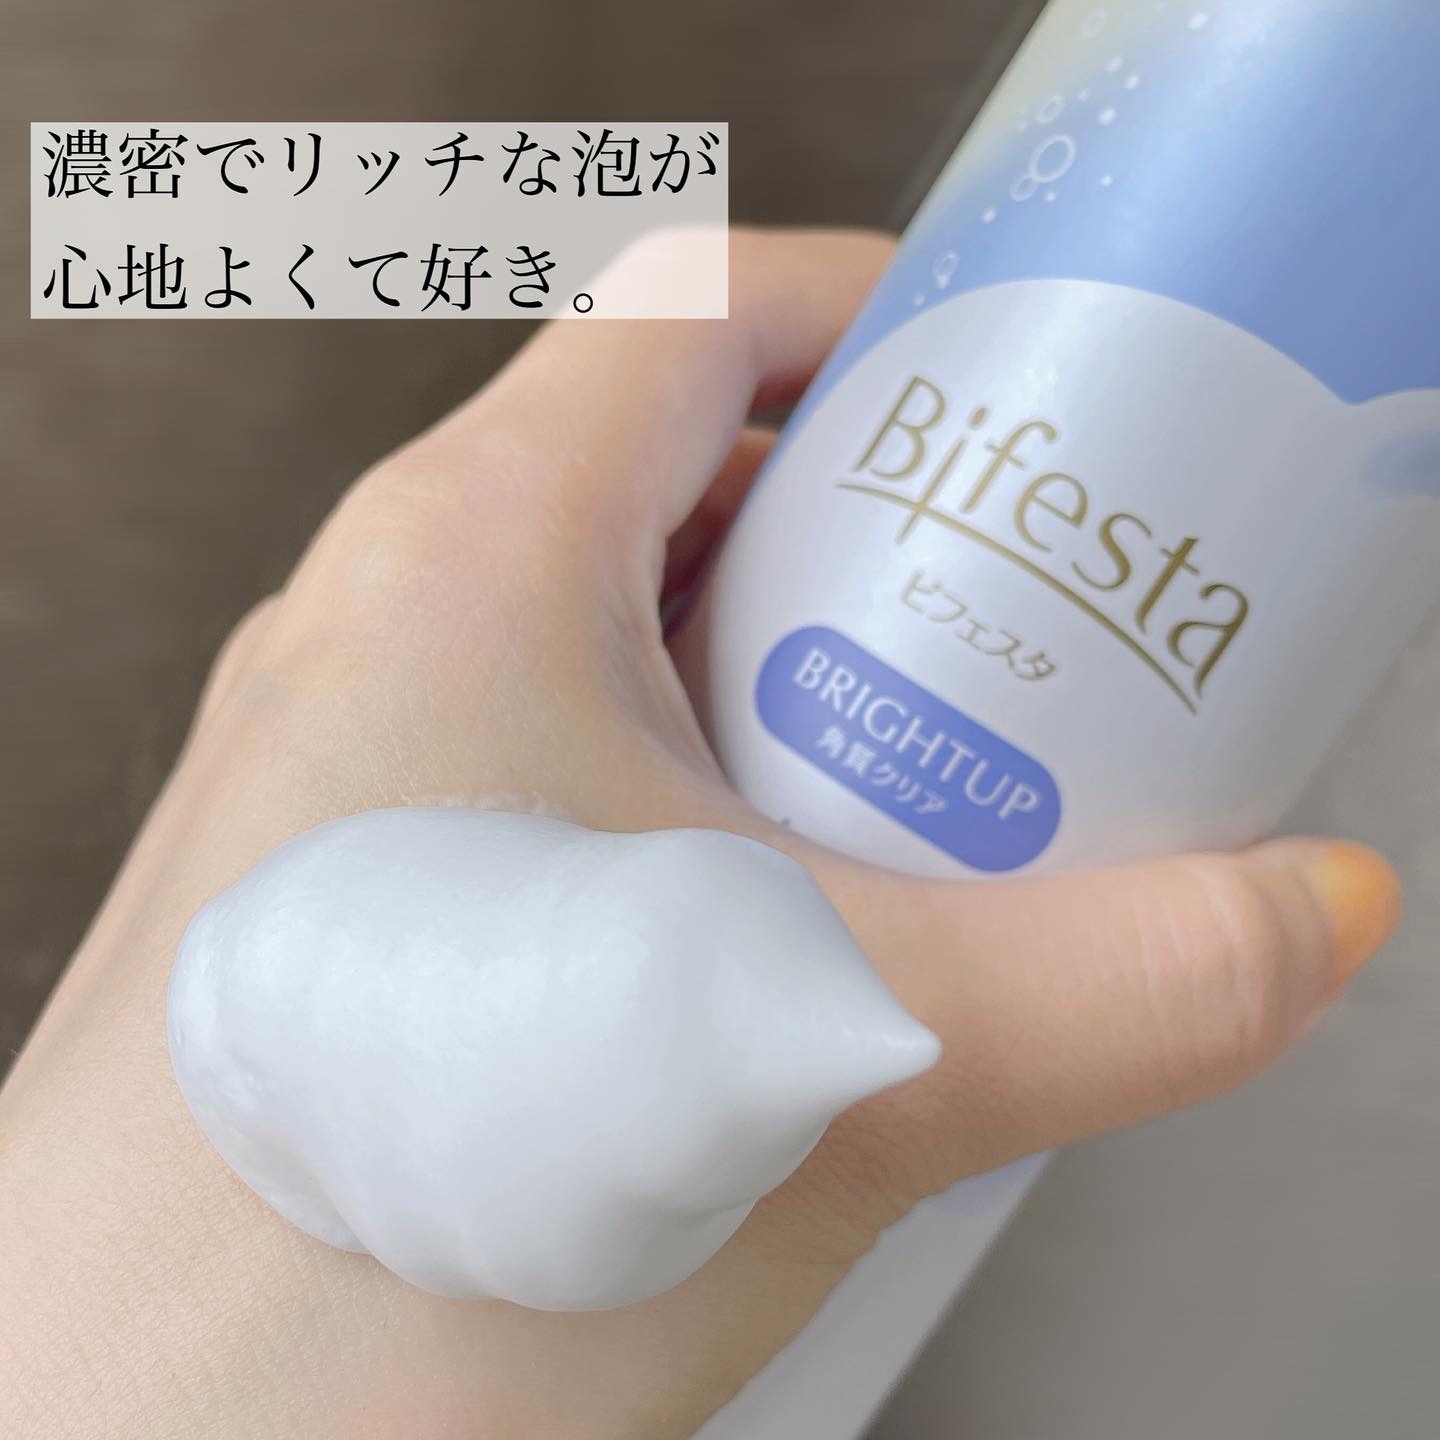 Bifesta(ビフェスタ) 泡洗顔 ブライトアップの良い点・メリットに関するなゆさんの口コミ画像2